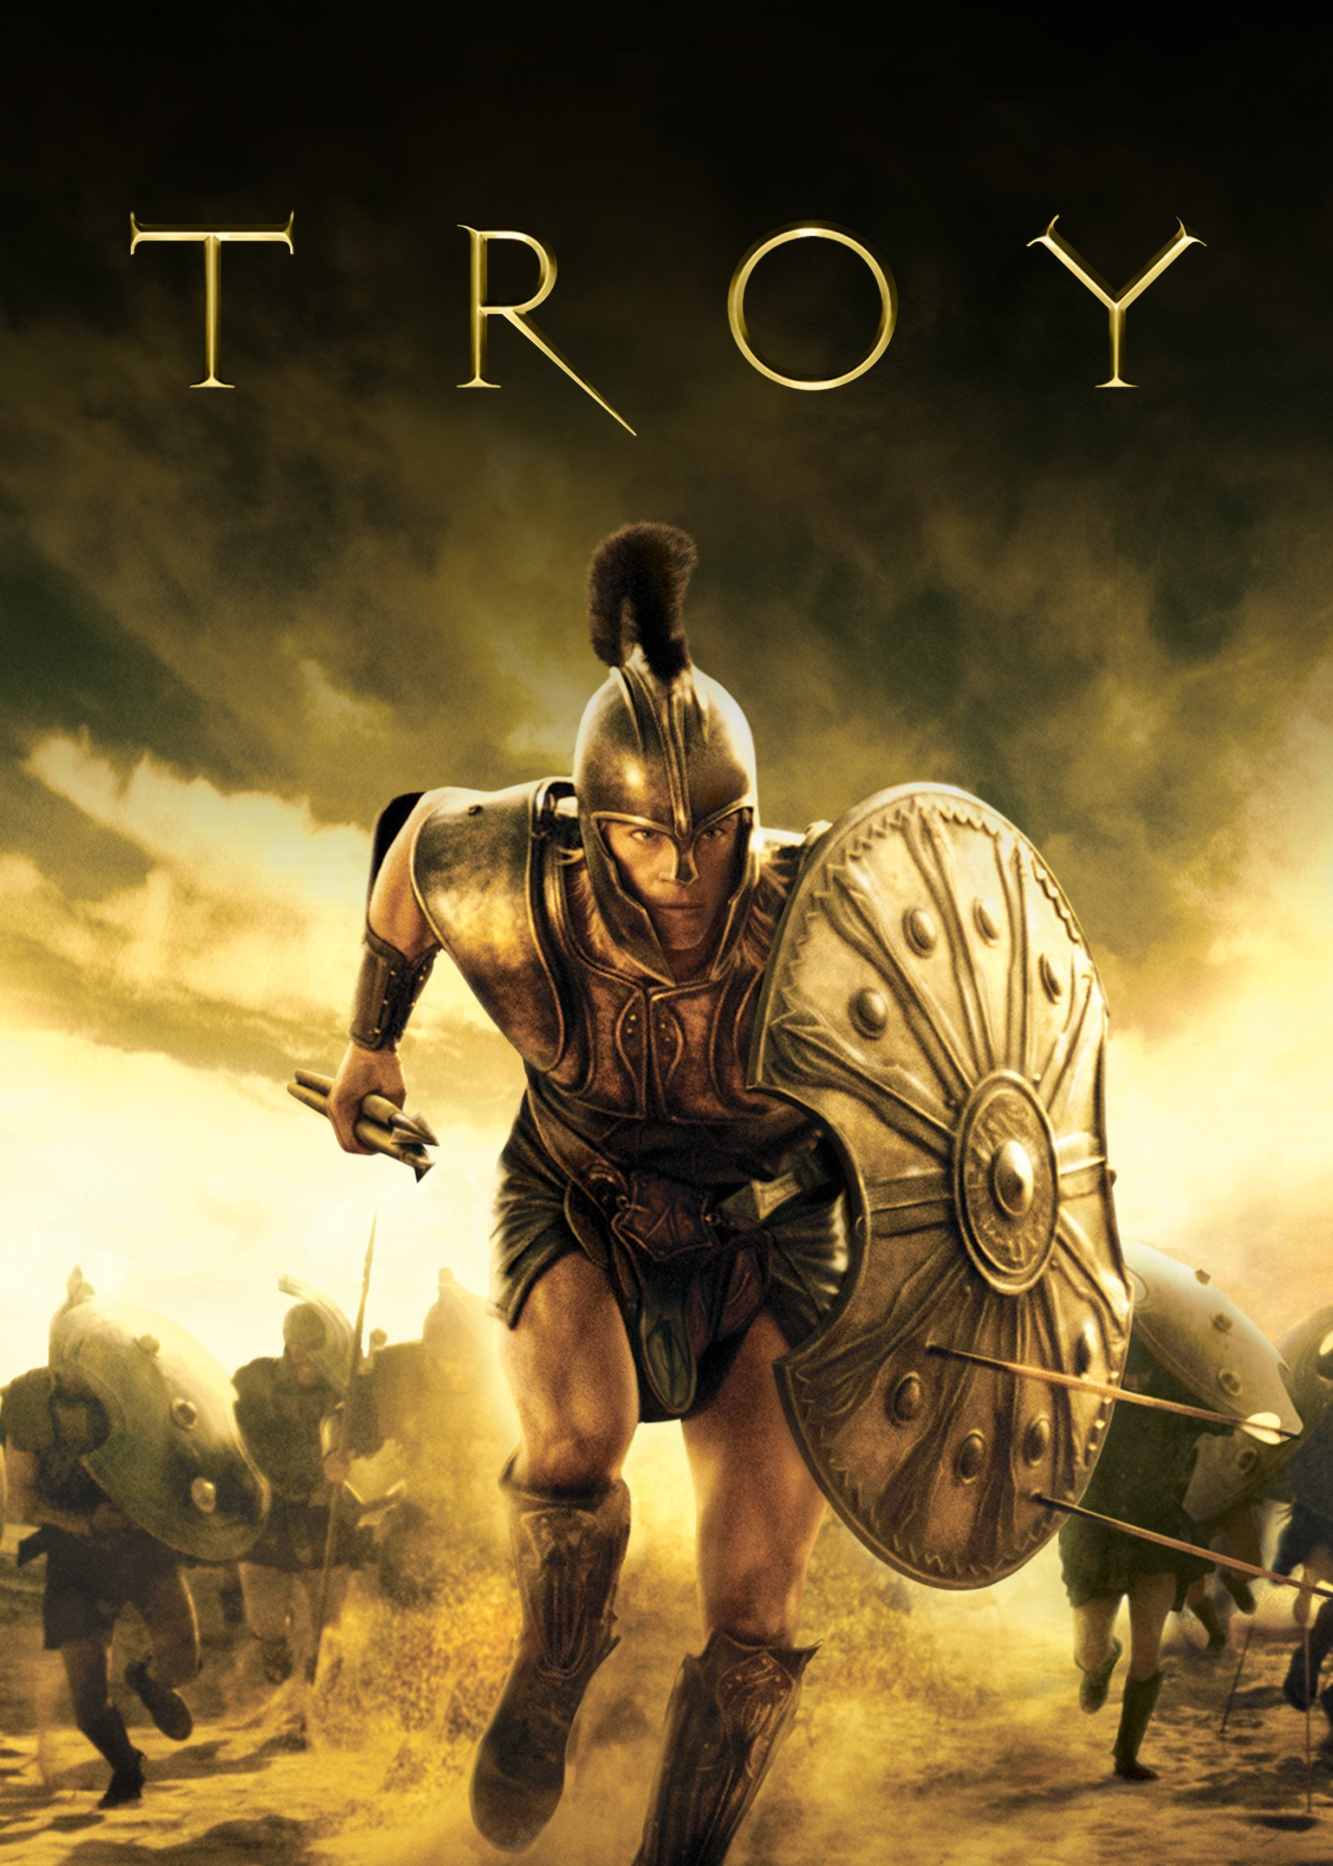 Poster Phim Người Hùng Thành Troy (Troy)